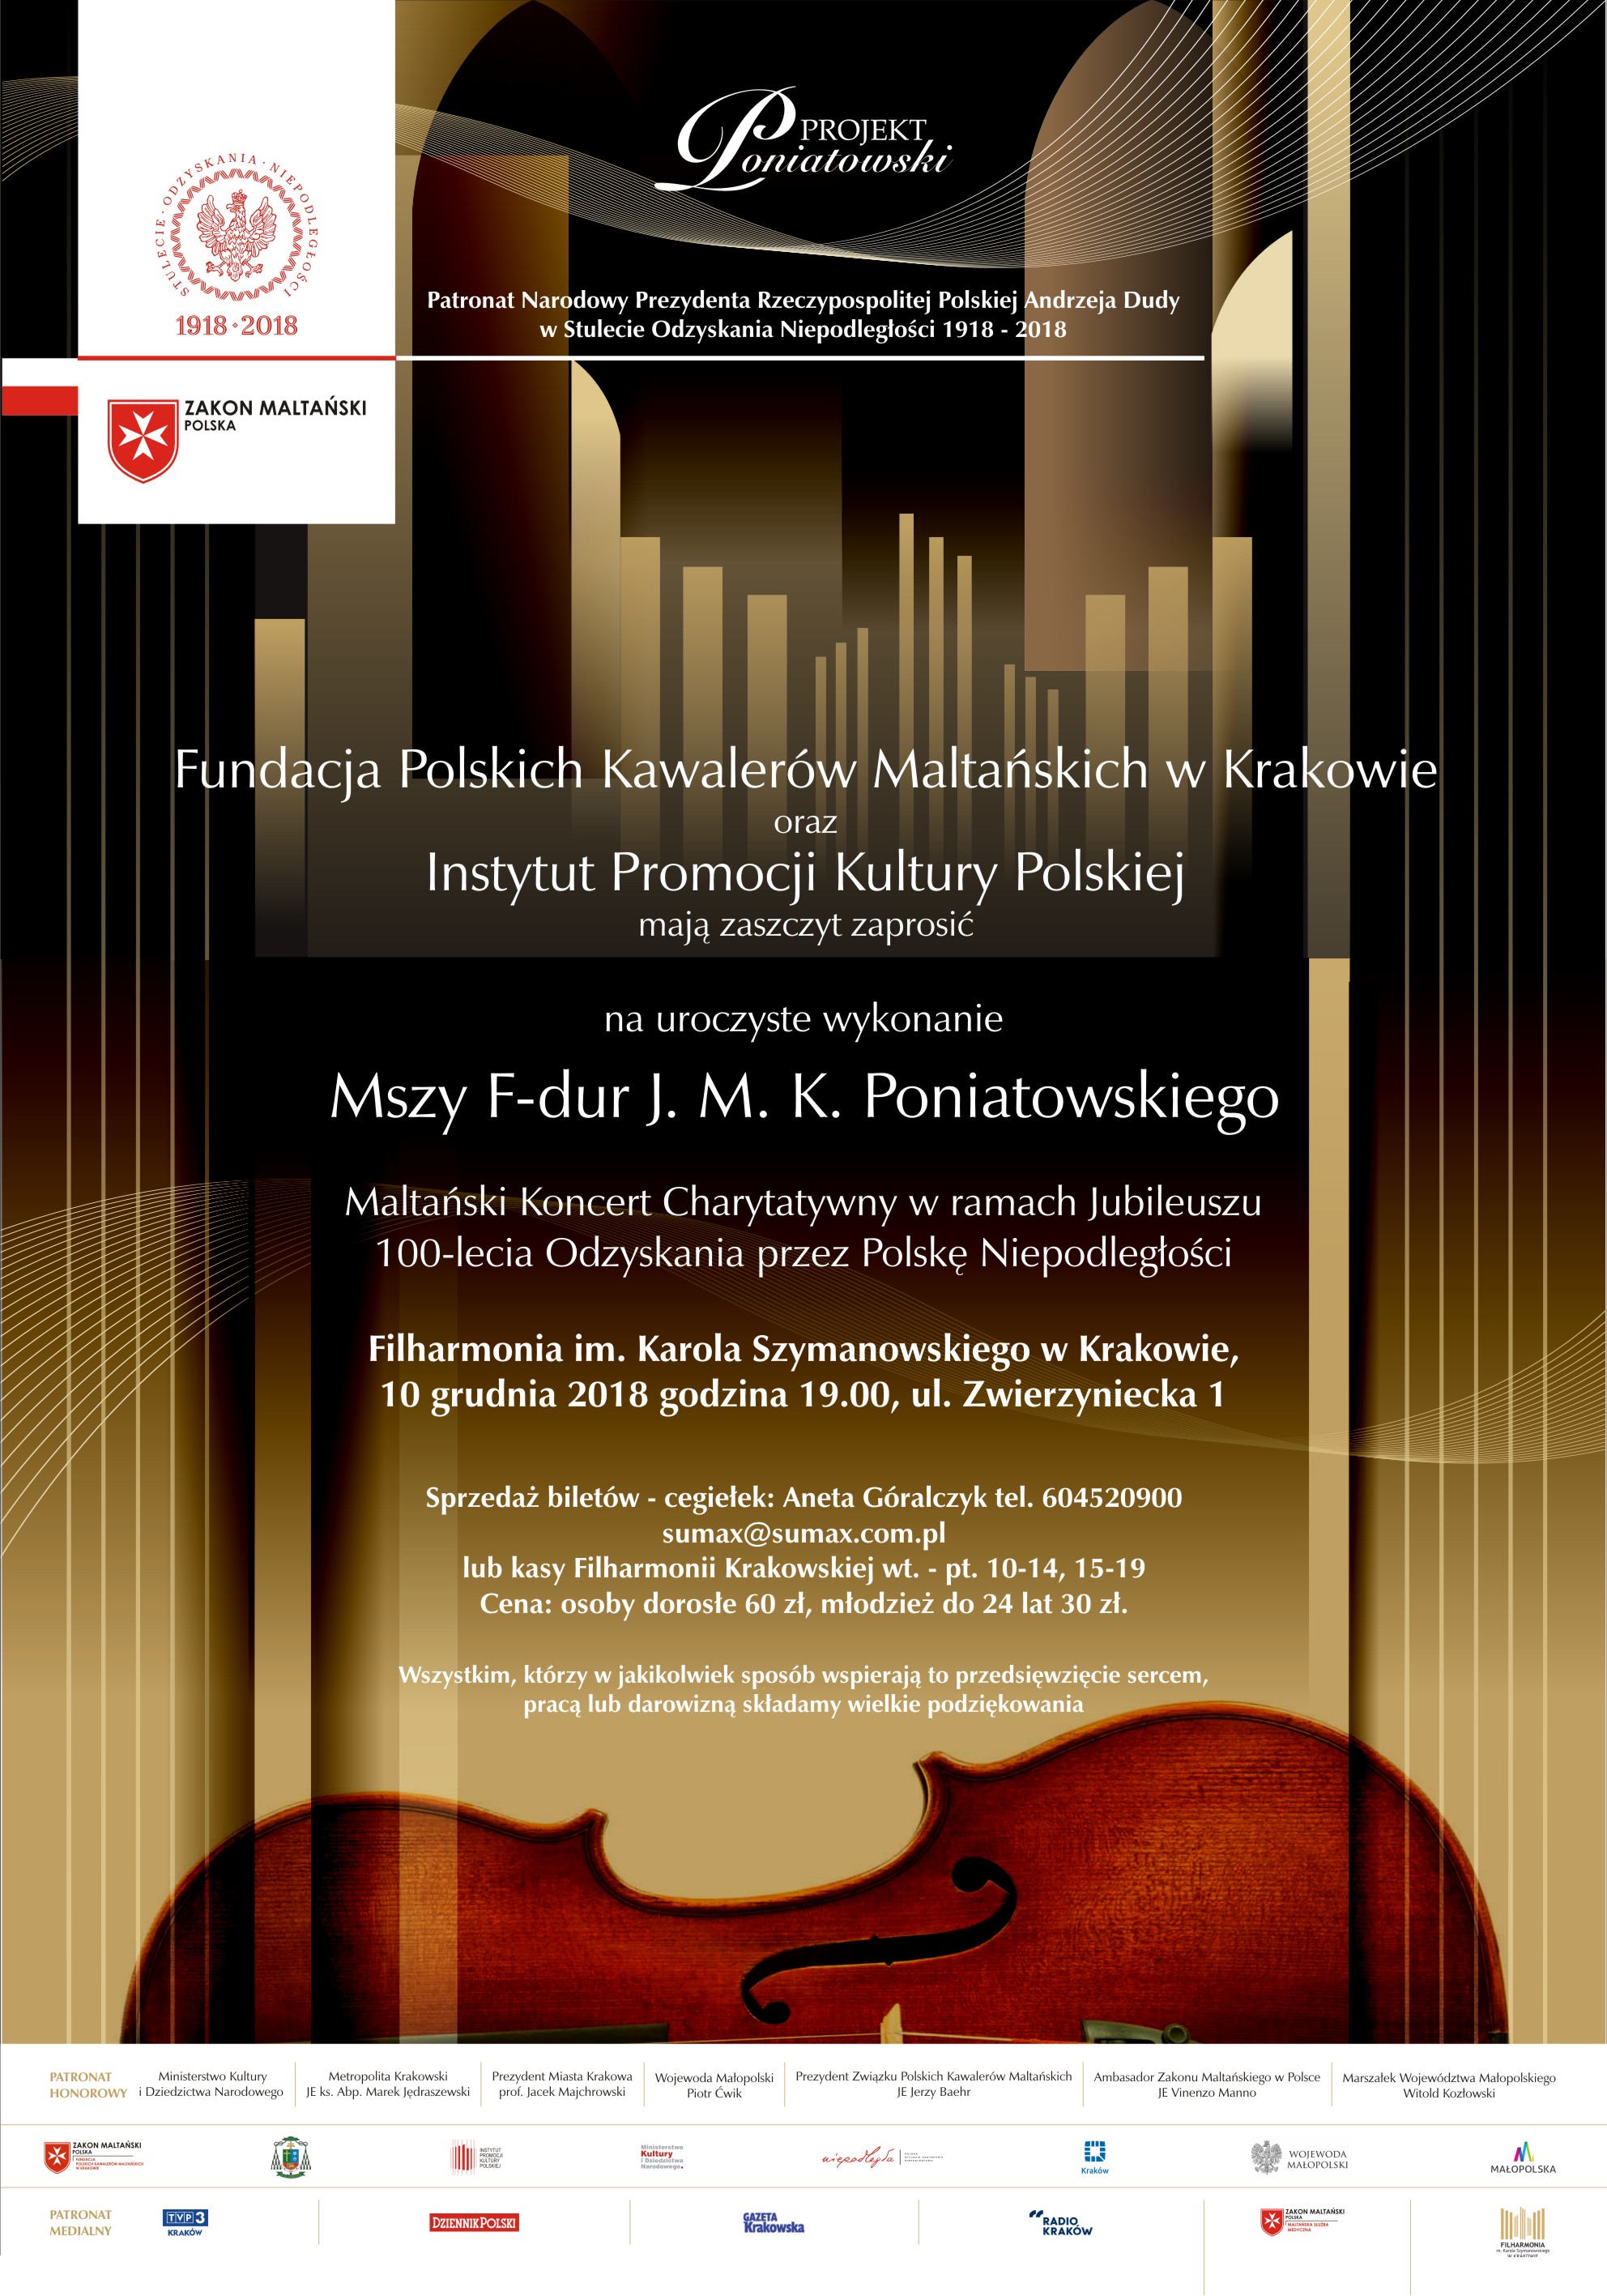 Maltański Koncert Charytatywny w ramach jubileuszu 100-lecia odzyskania przez Polskę niepodległości